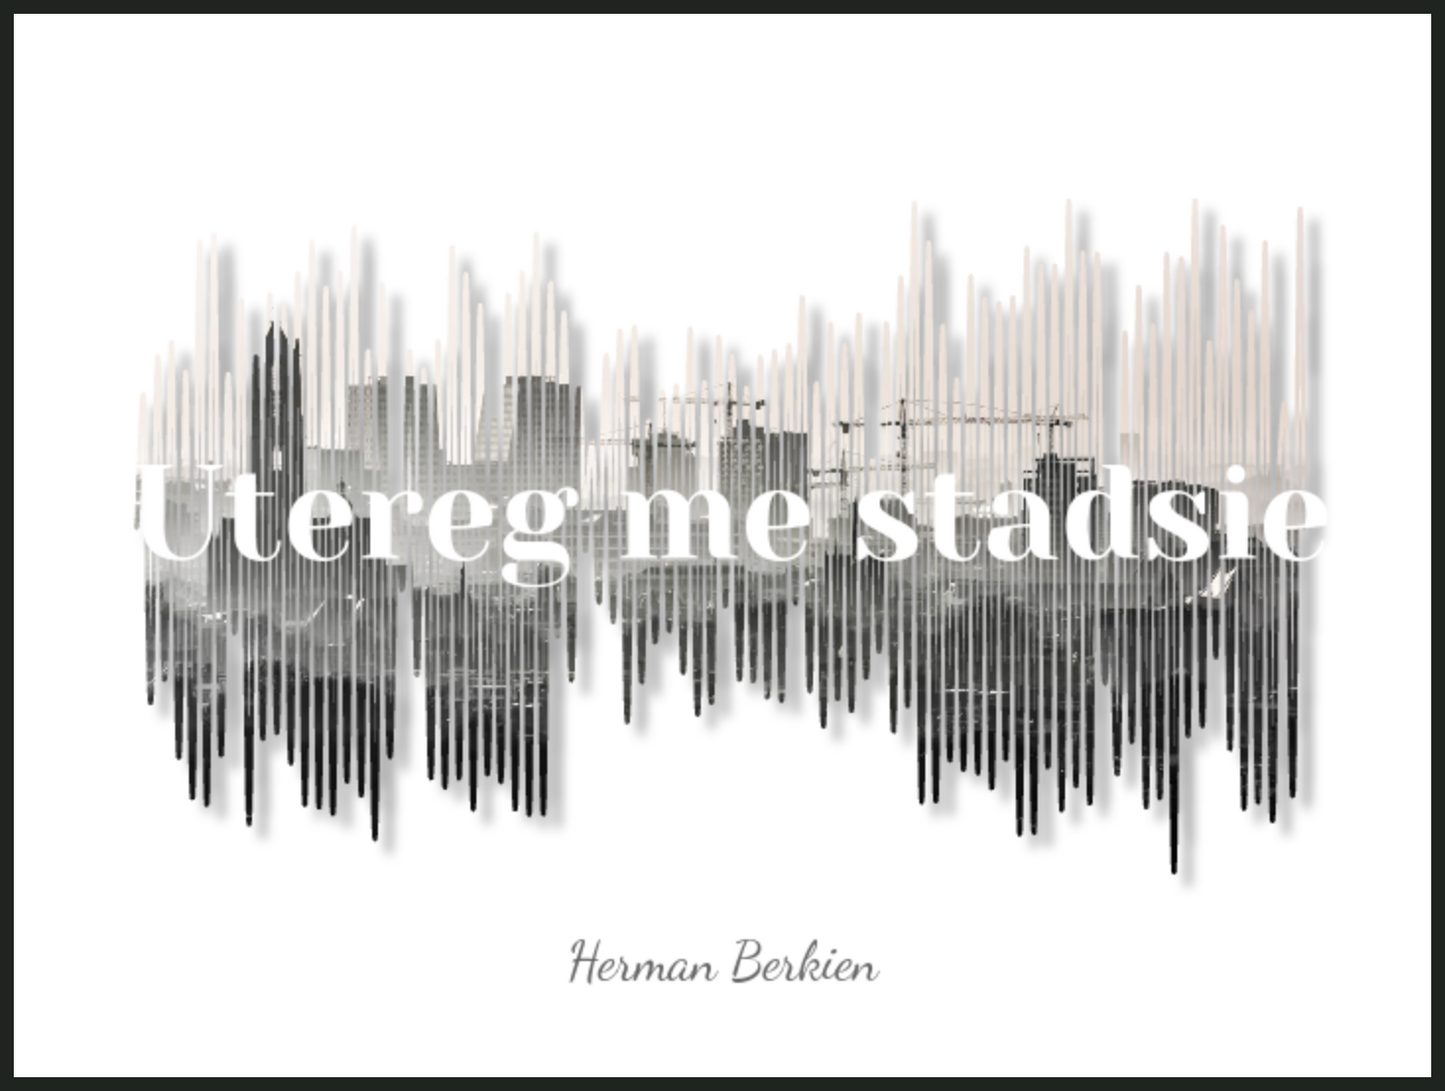 Herman Berkien - Utereg me stadsie Printawave Unique Design #1686328296713